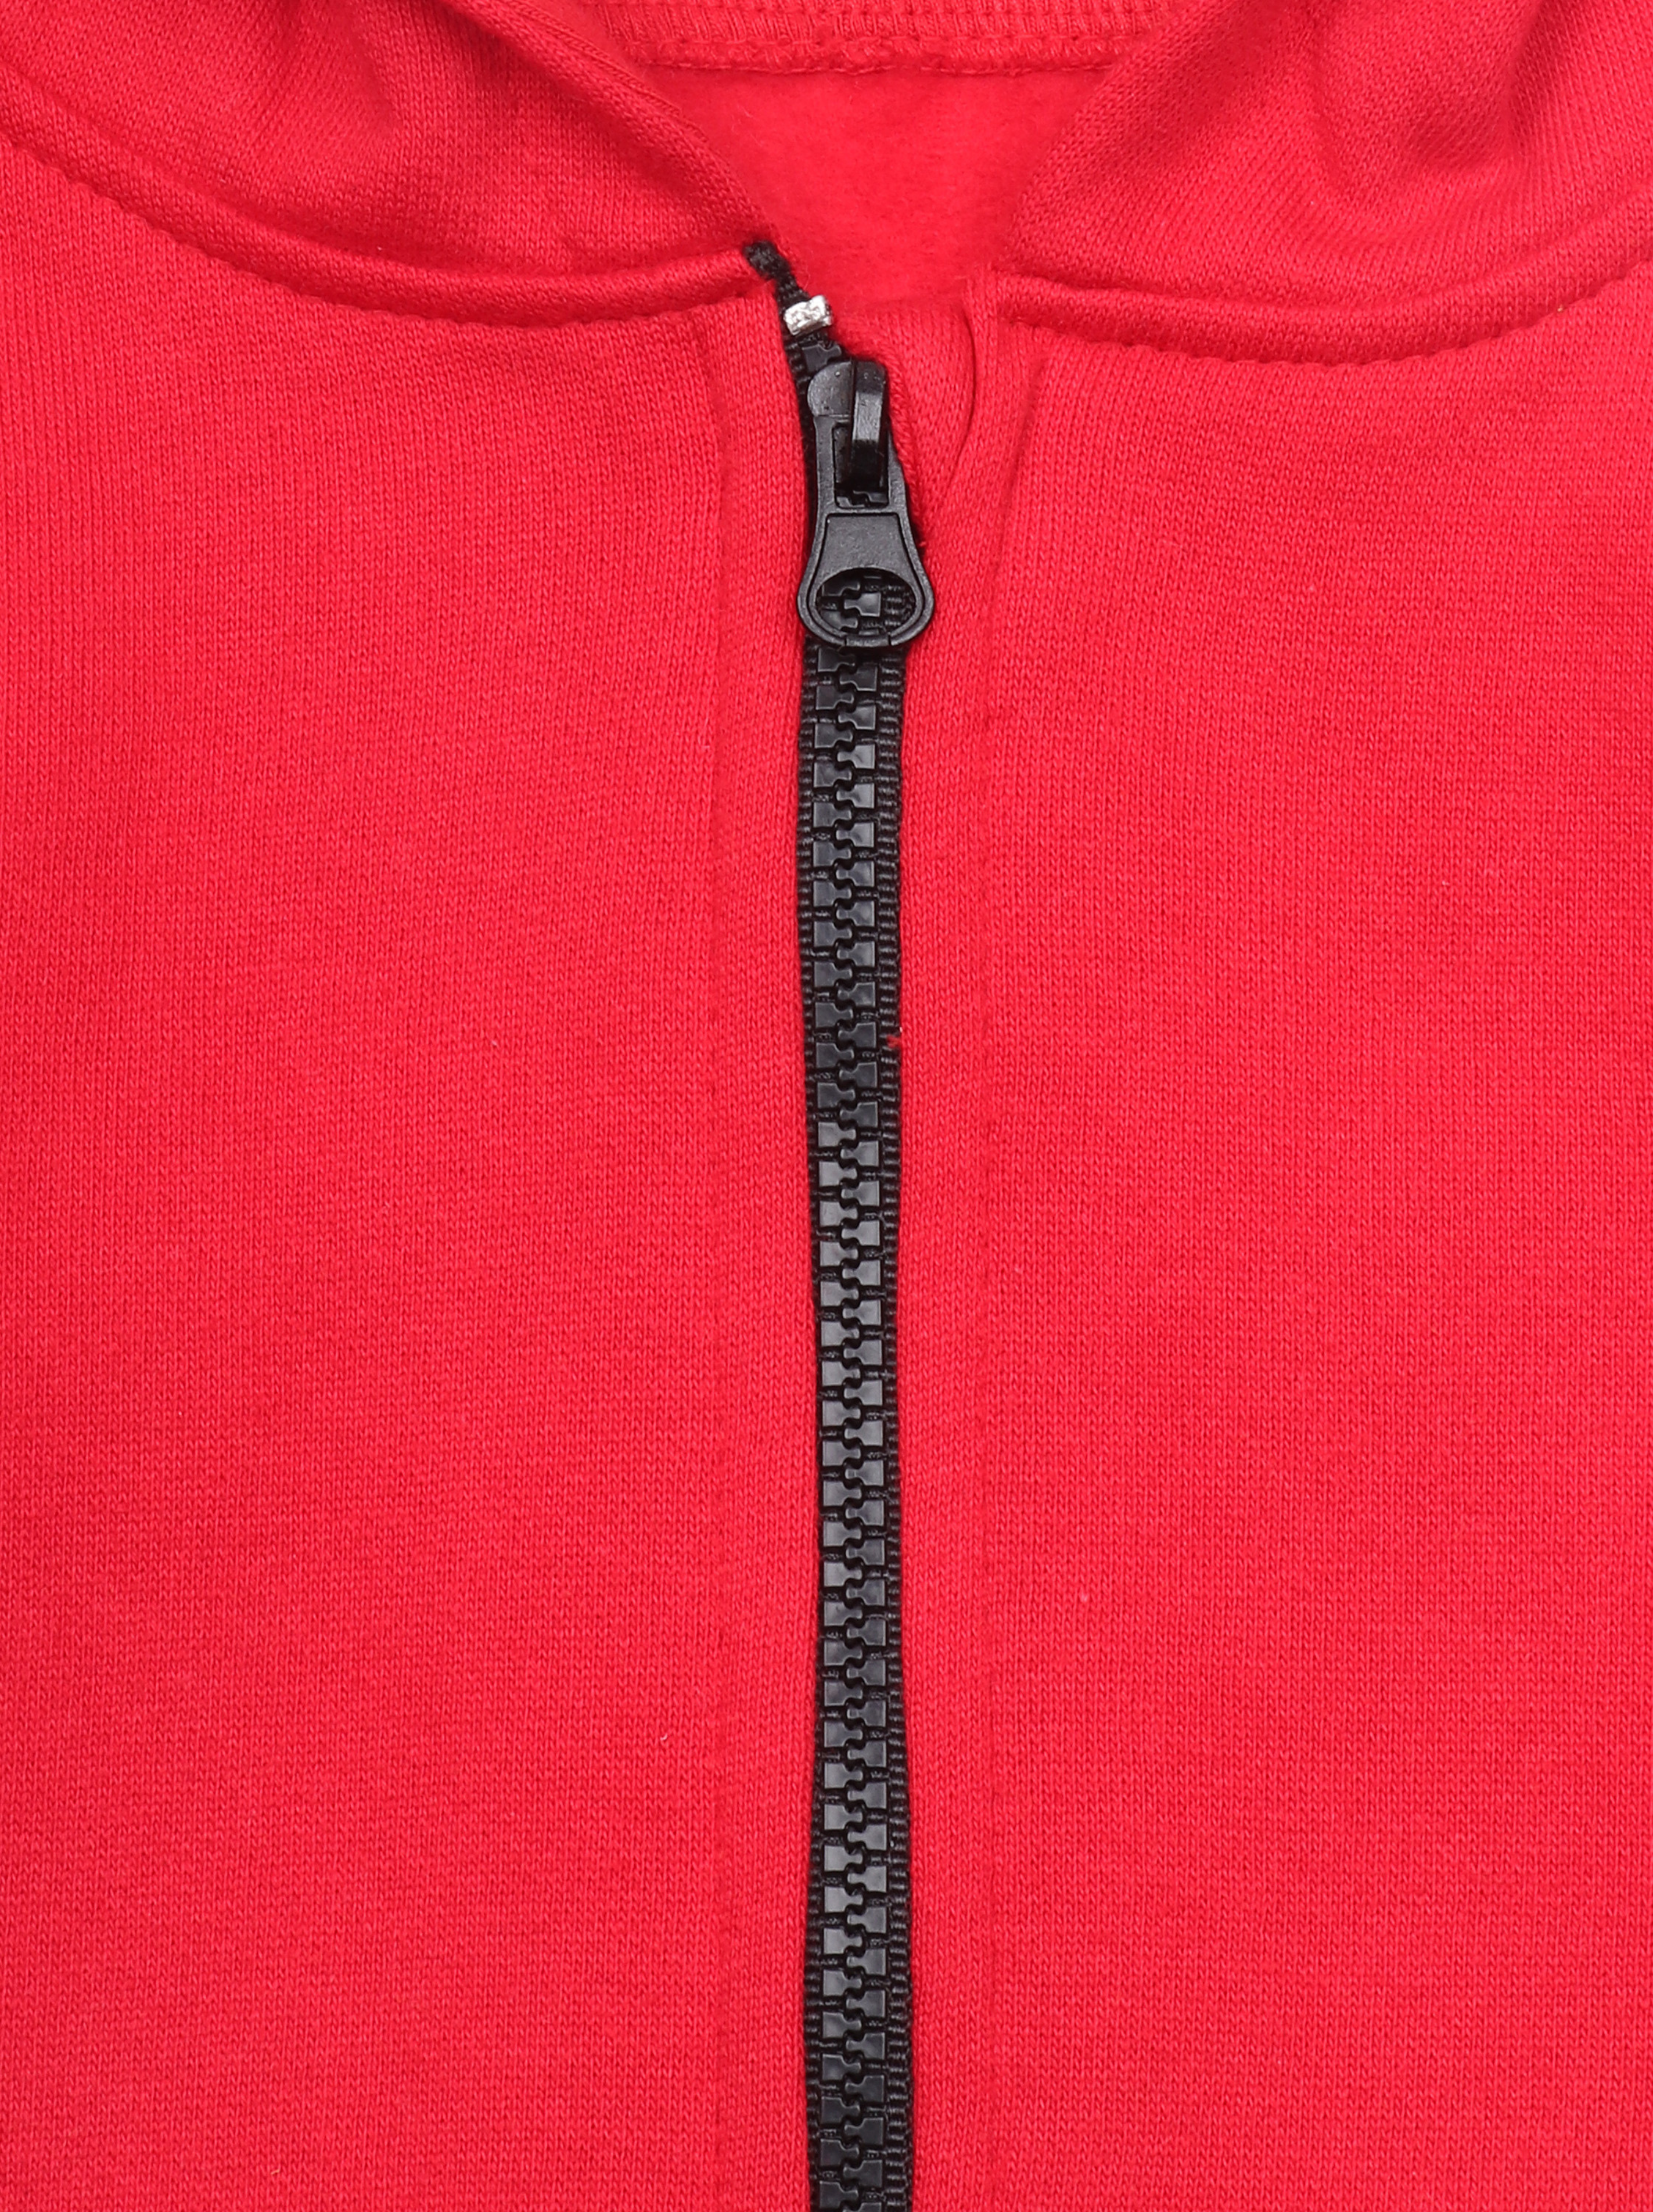 Kids Unisex Red Full Sleeve Zipper Hoodie